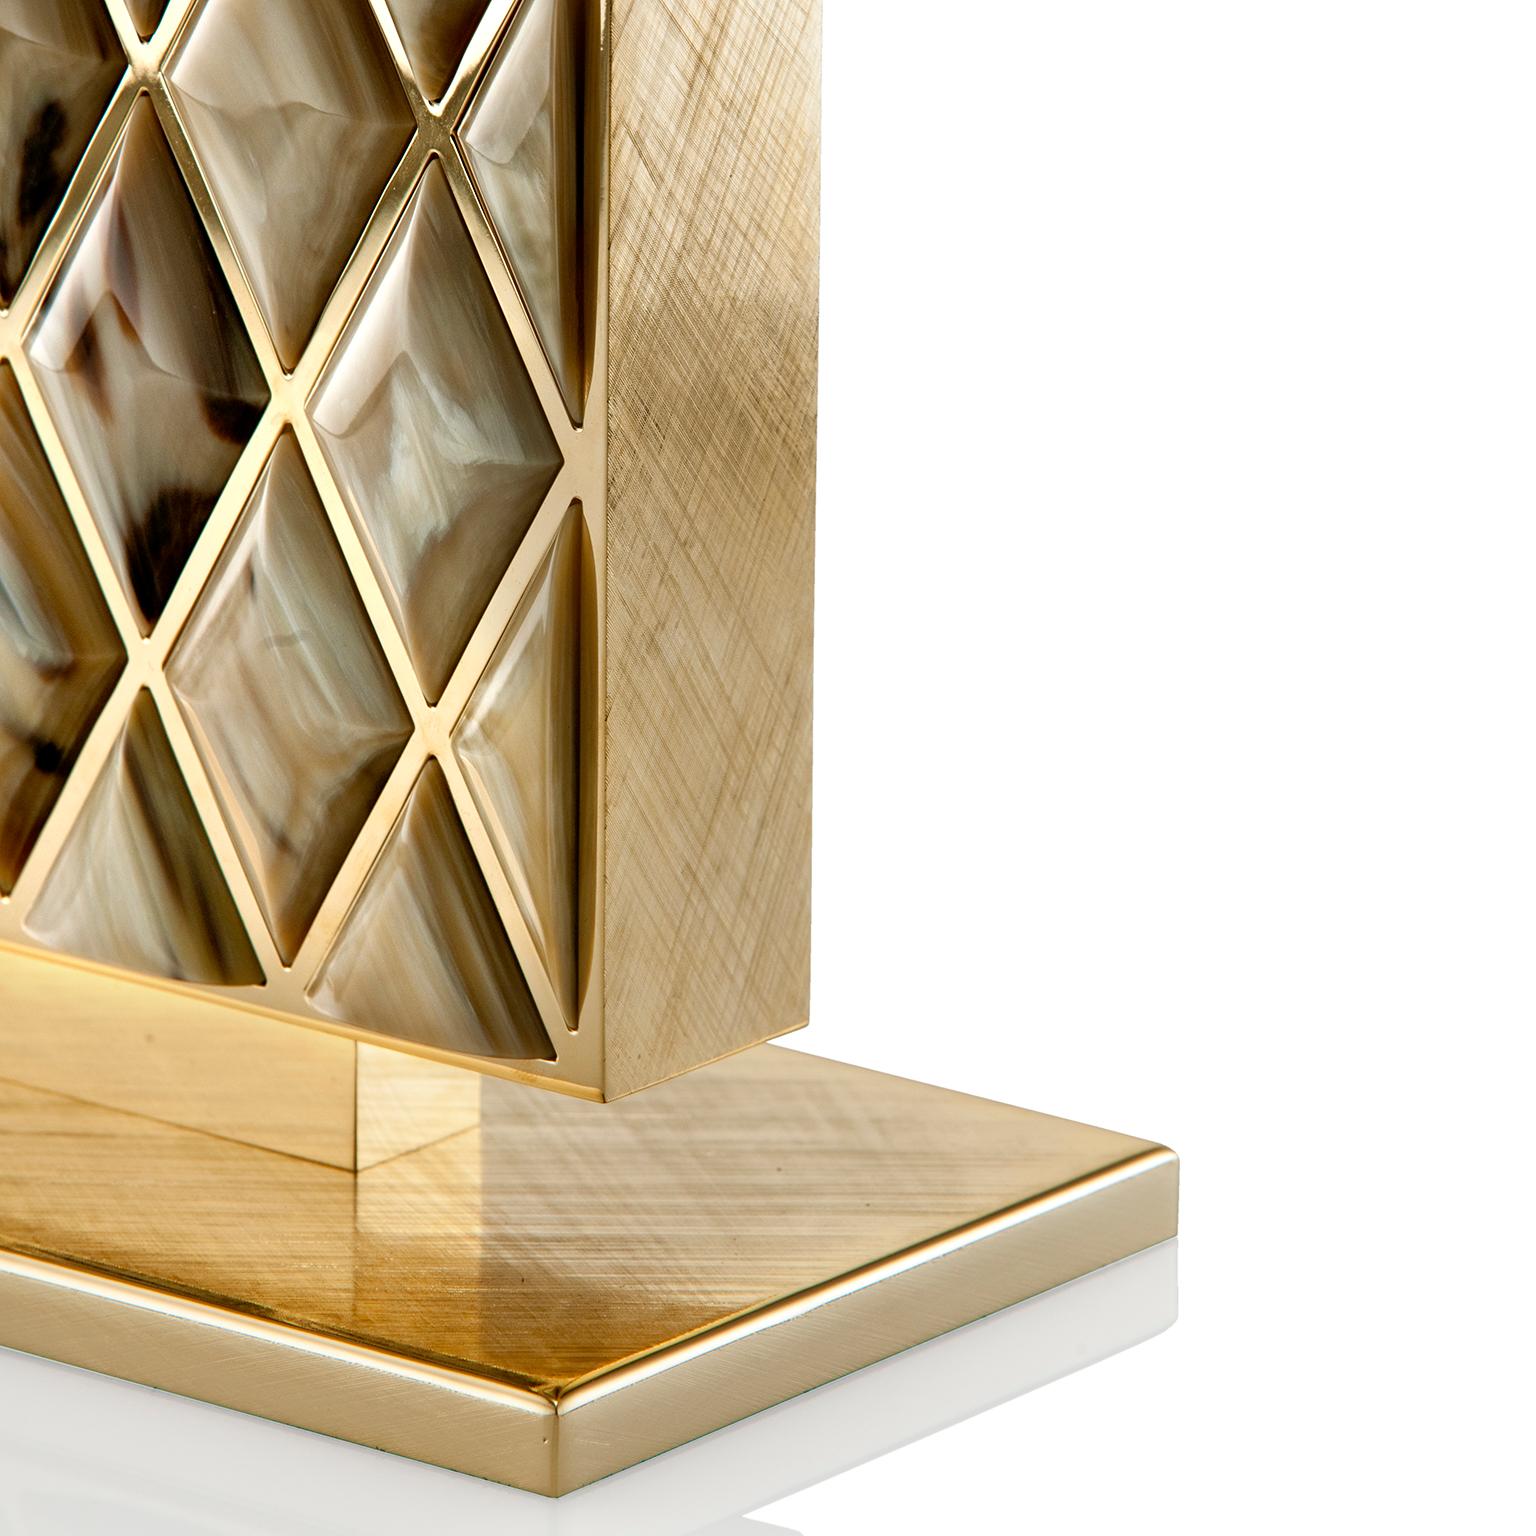 Die mit viel Liebe zum Detail gefertigte Tischleuchte Saba ist eine zeitlose Dekoration, die auf einem Beistelltisch oder als Paar neben dem Bett Platz findet. Hervorragende Stücke aus Corno Italiano, die von Hand geschliffen wurden, um an wertvolle